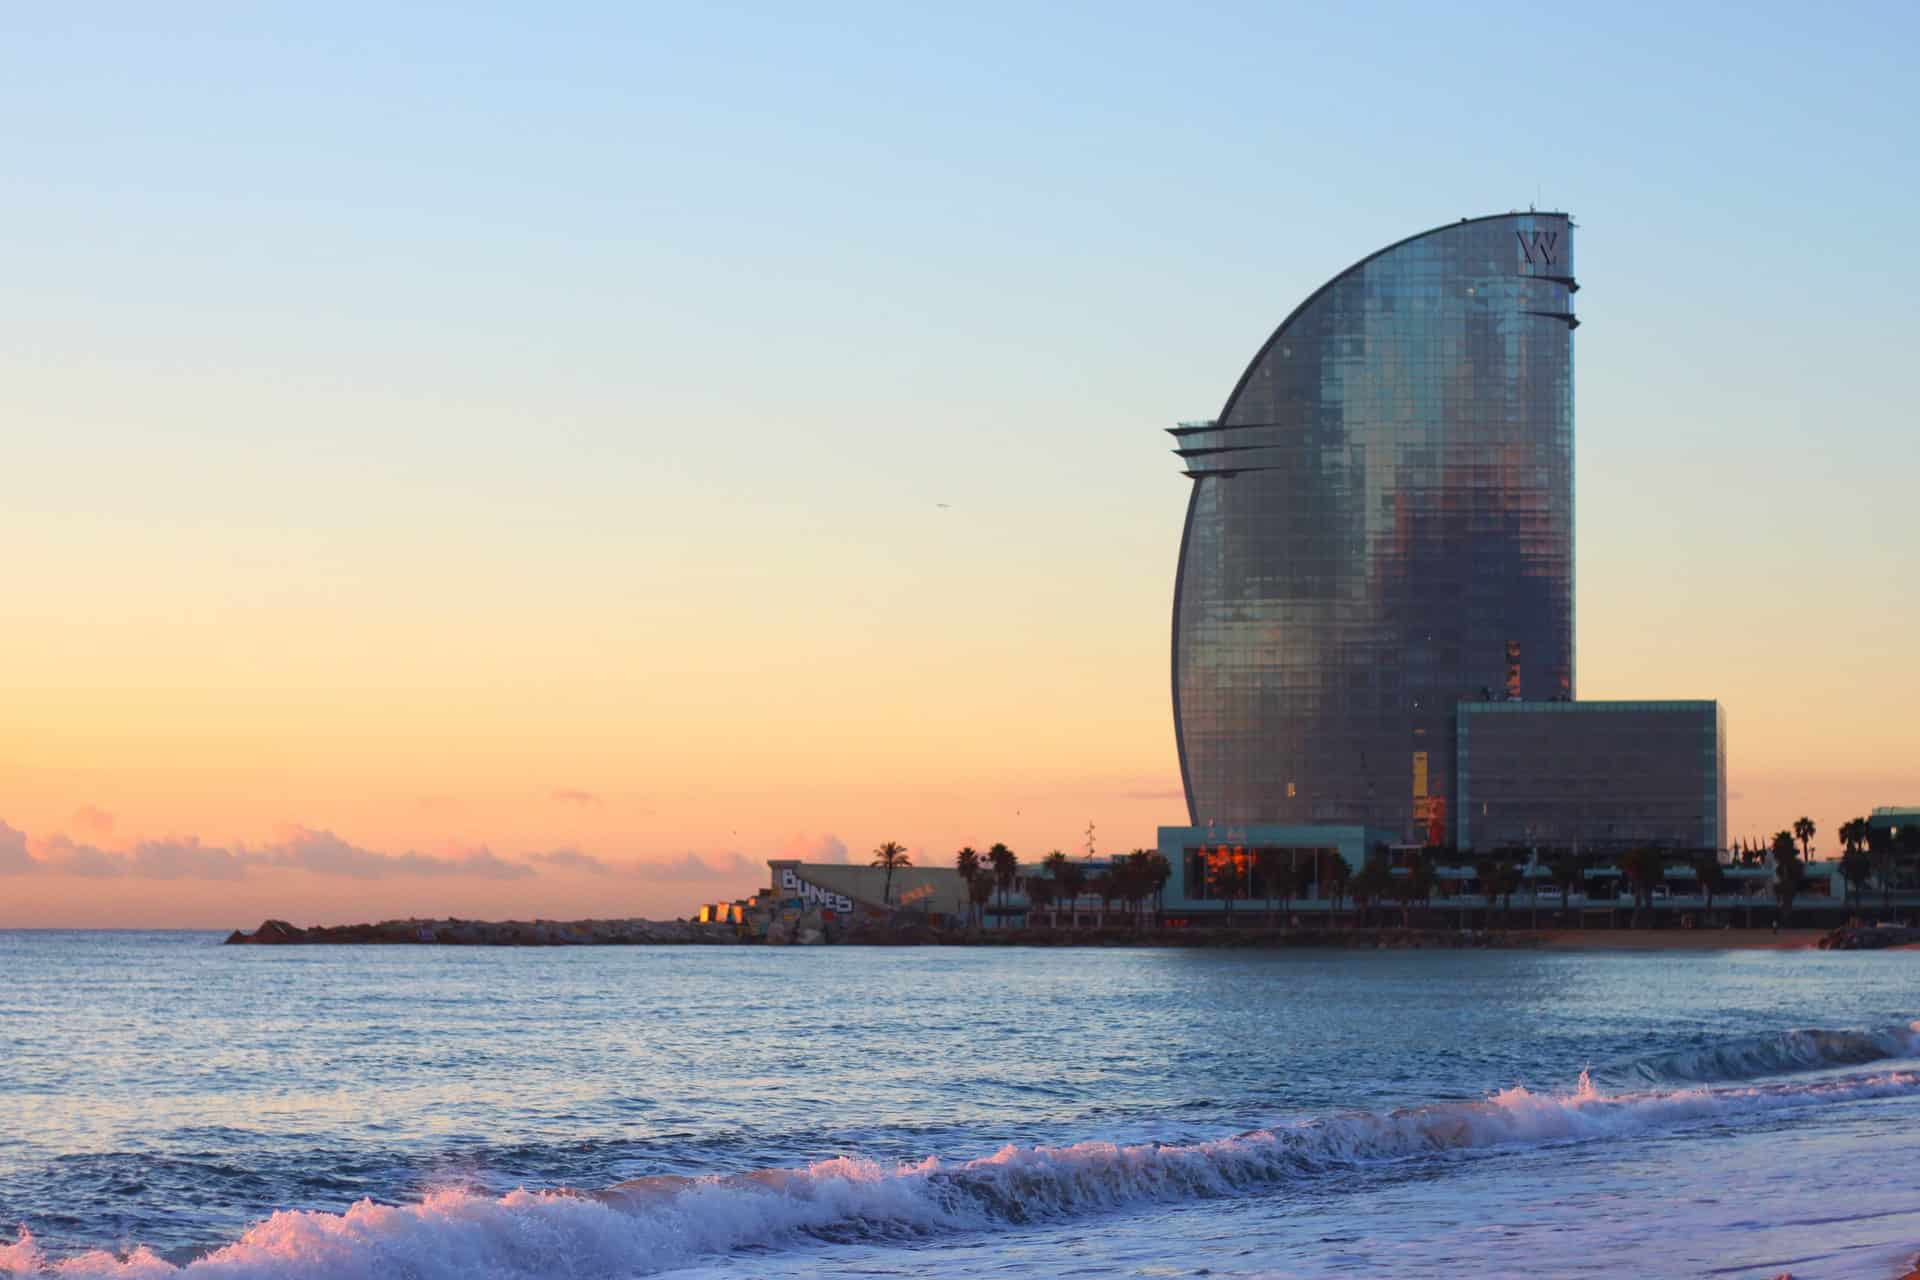 Sede delle spiagge più popolari di Barcellona, La Barceloneta è la zona migliore per soggiornare a Barcellona per una vacanza al mare.